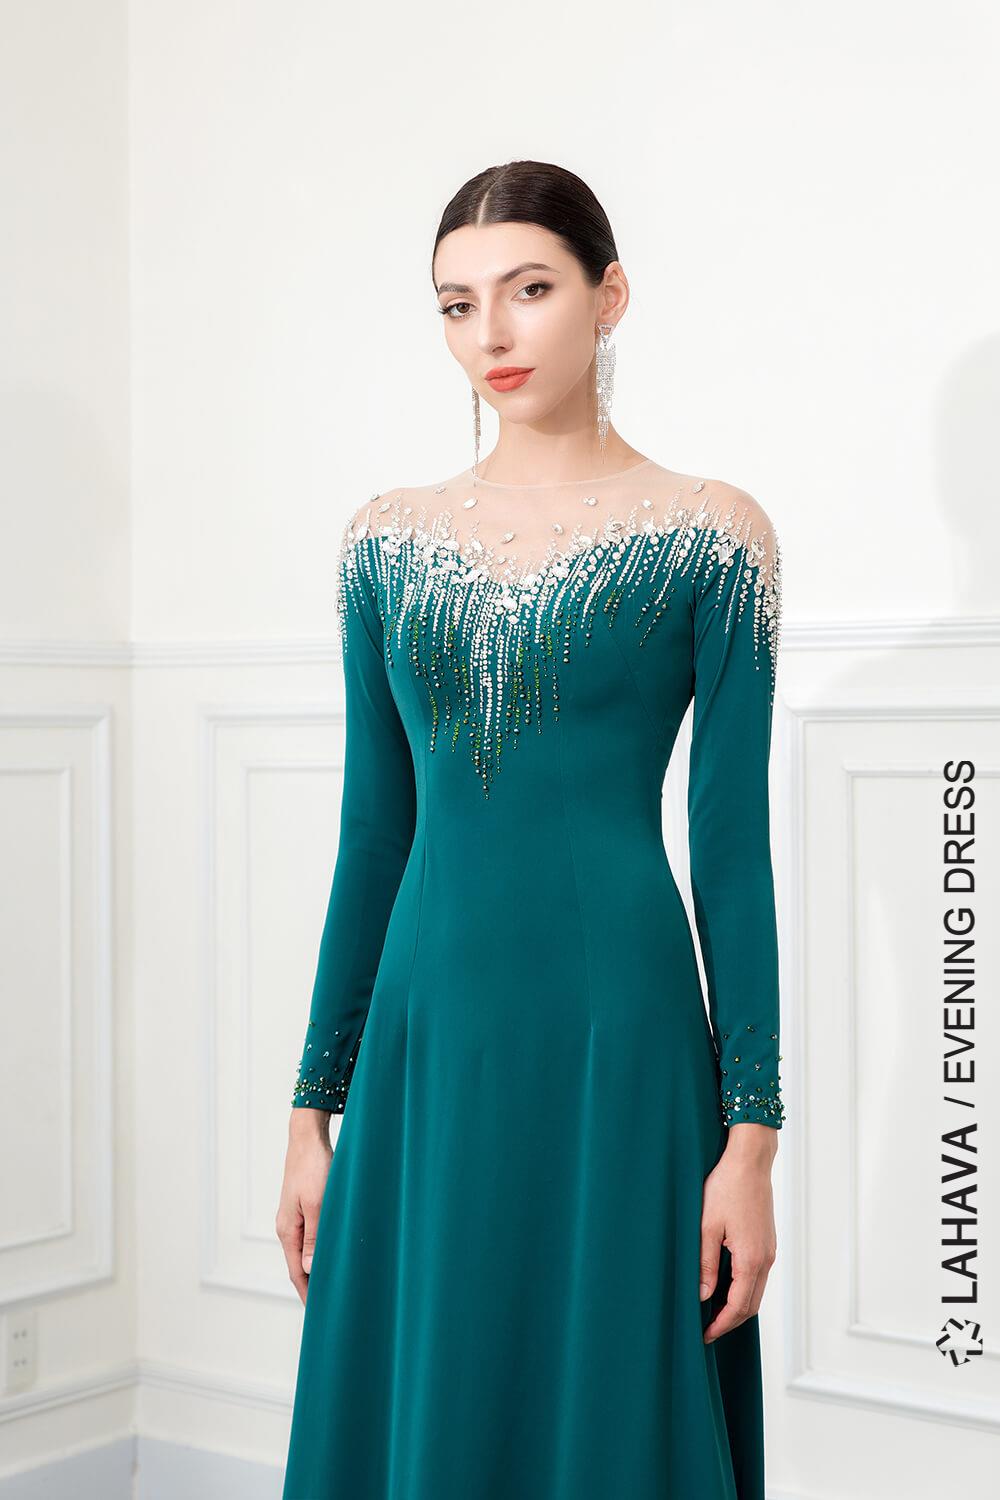 Top 10 Váy đầm dự tiệc đẹp sang trọng Ayleen Dress